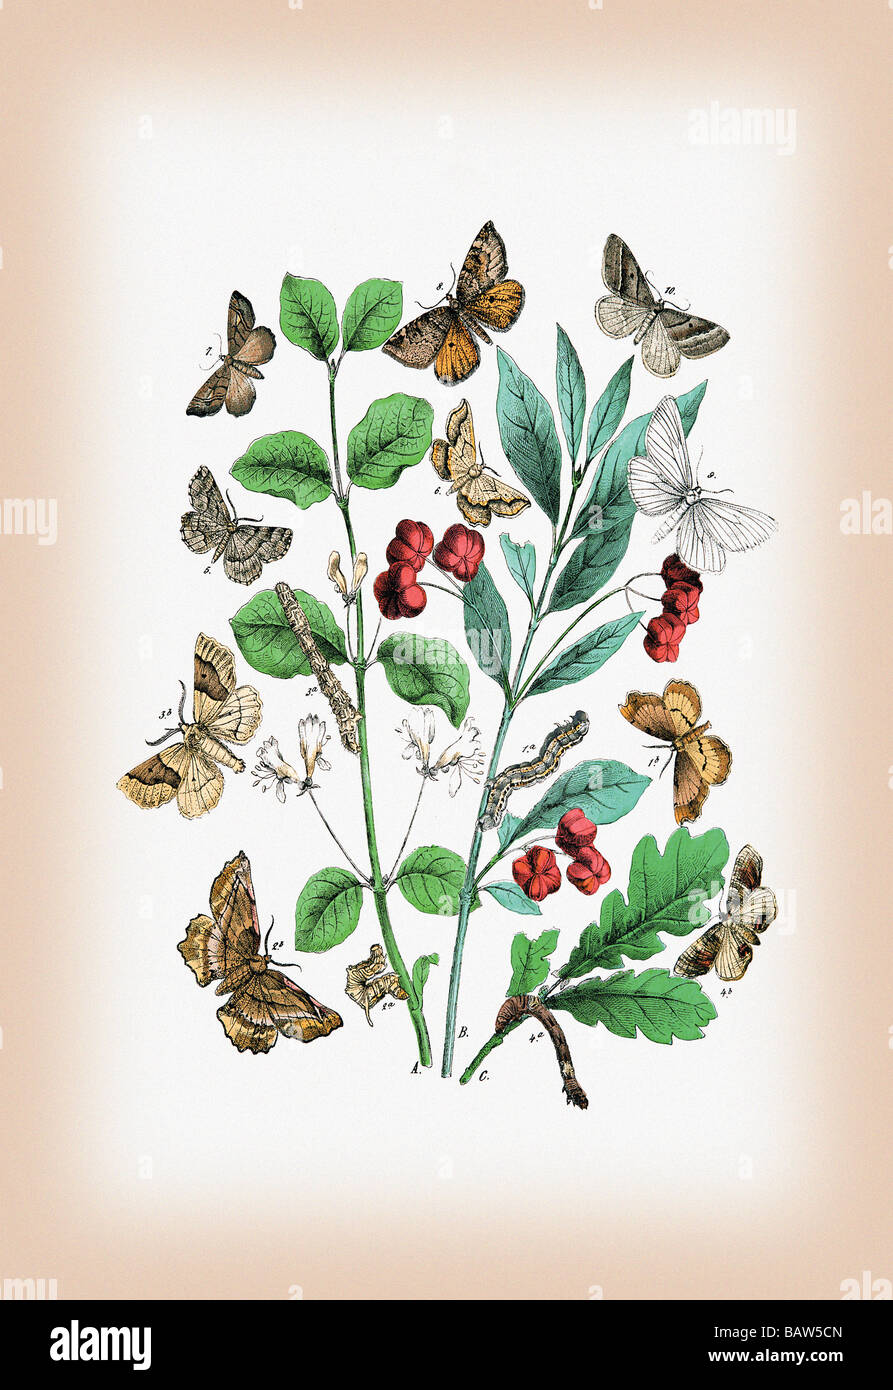 Moths: Pericallia Syringaria,Therapis Evonymaria,et al. Stock Photo